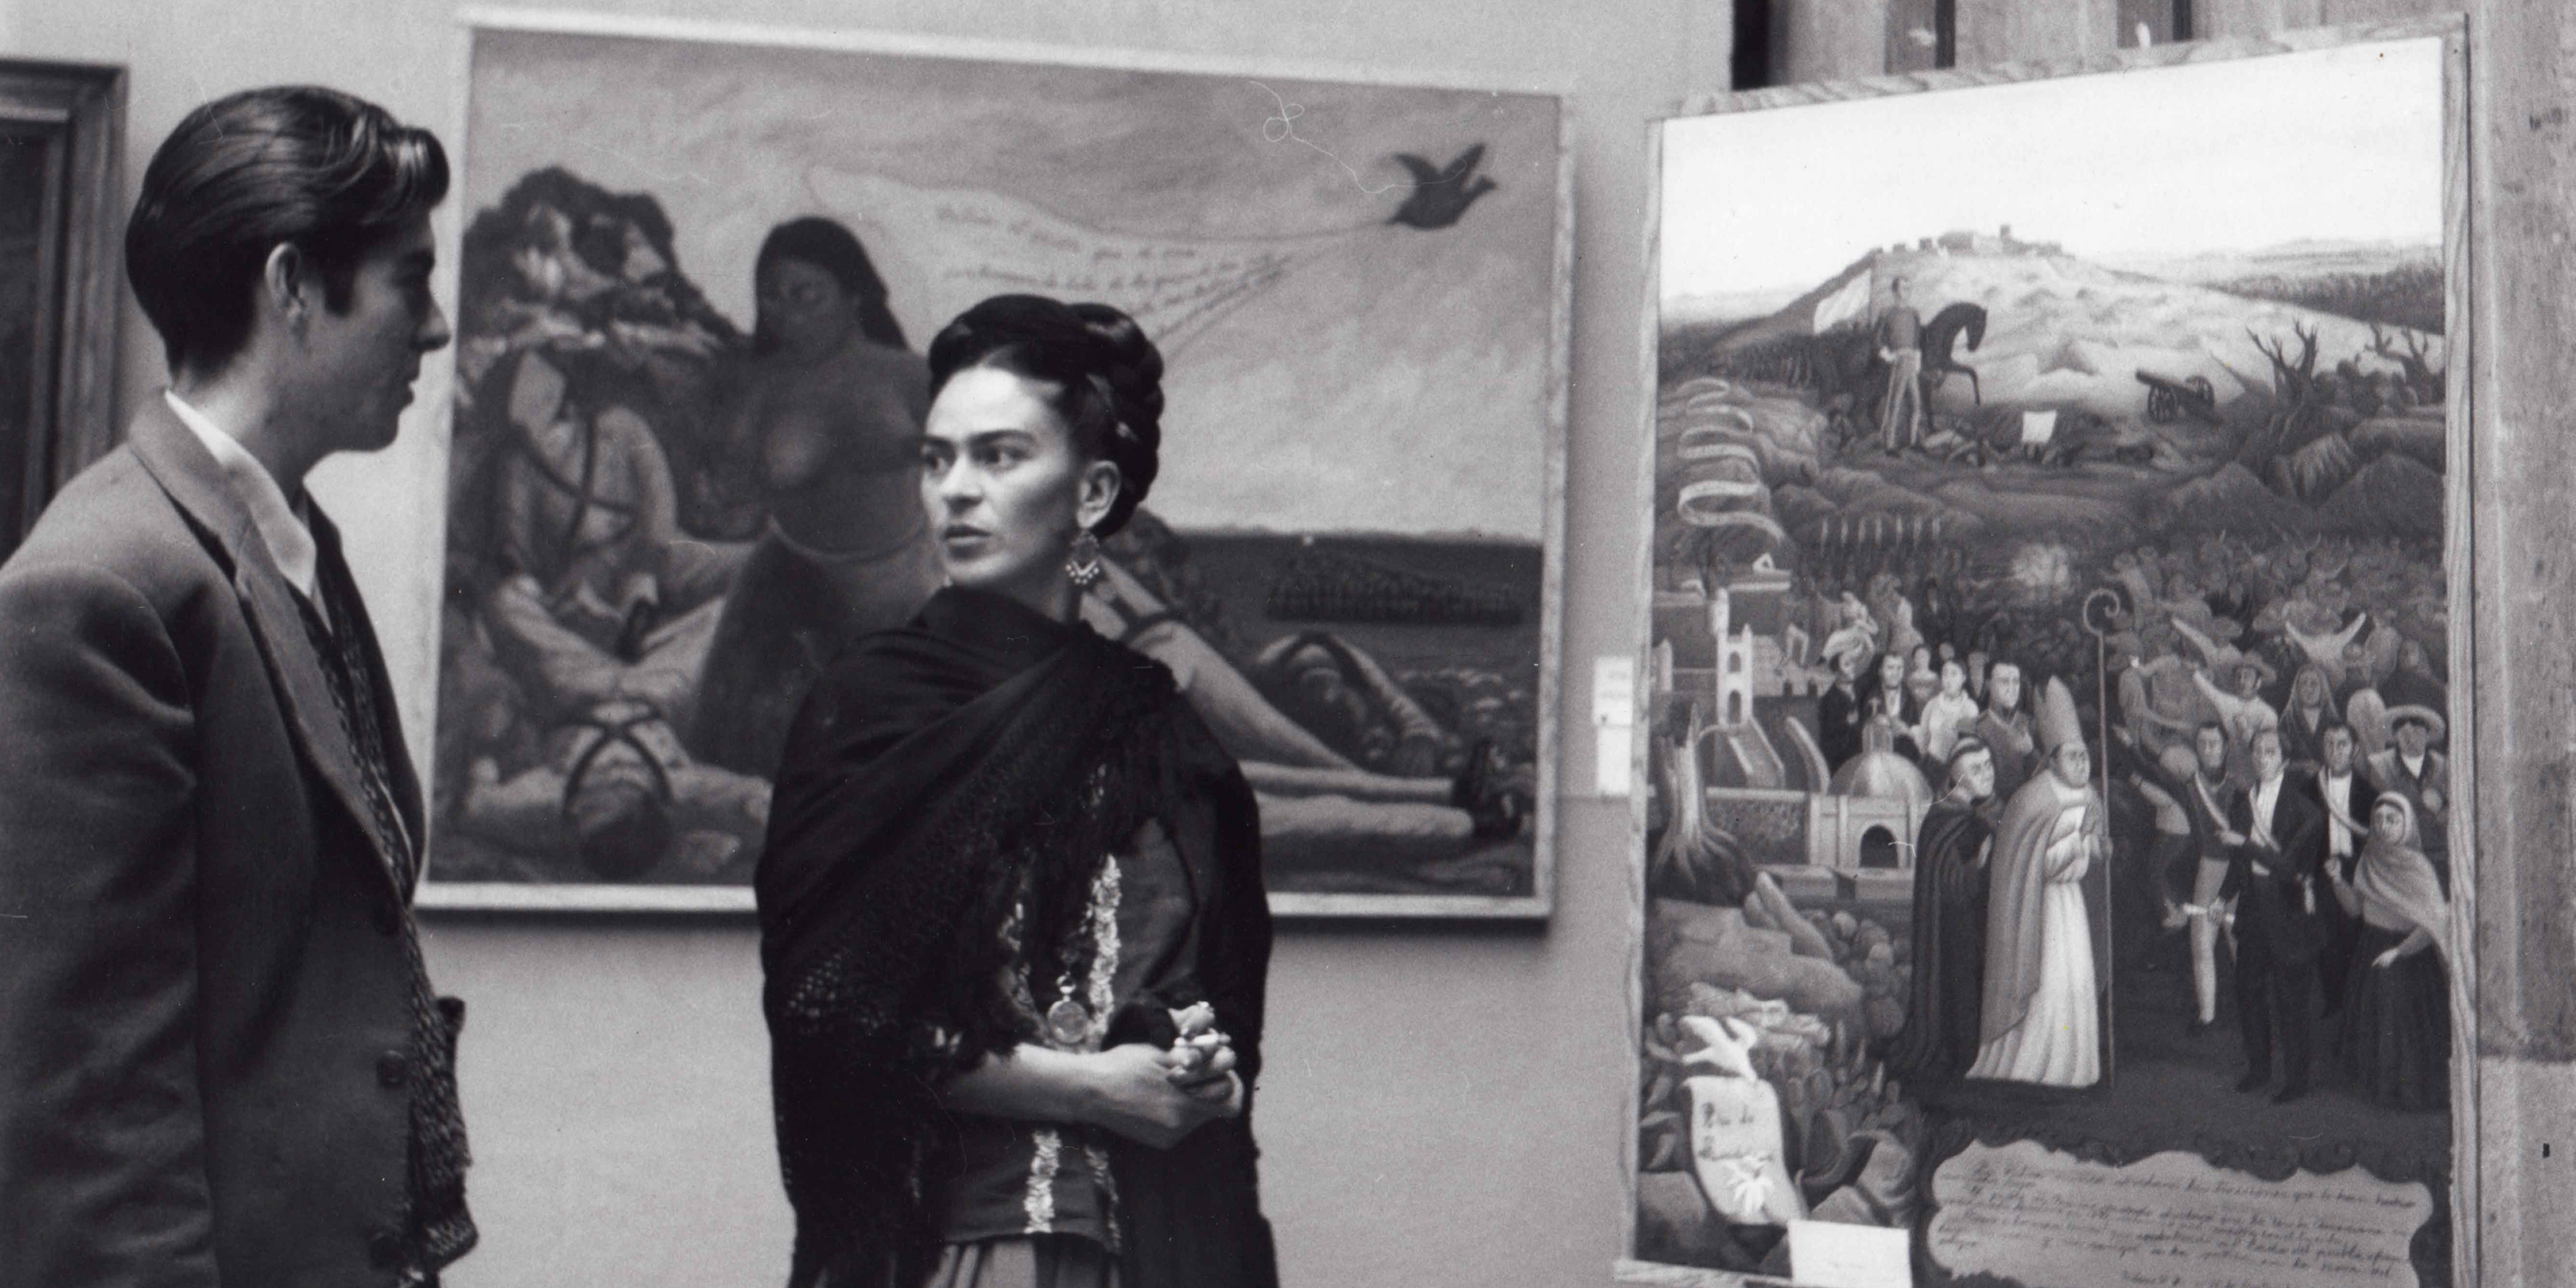 Frida Kahlo, the Teacher